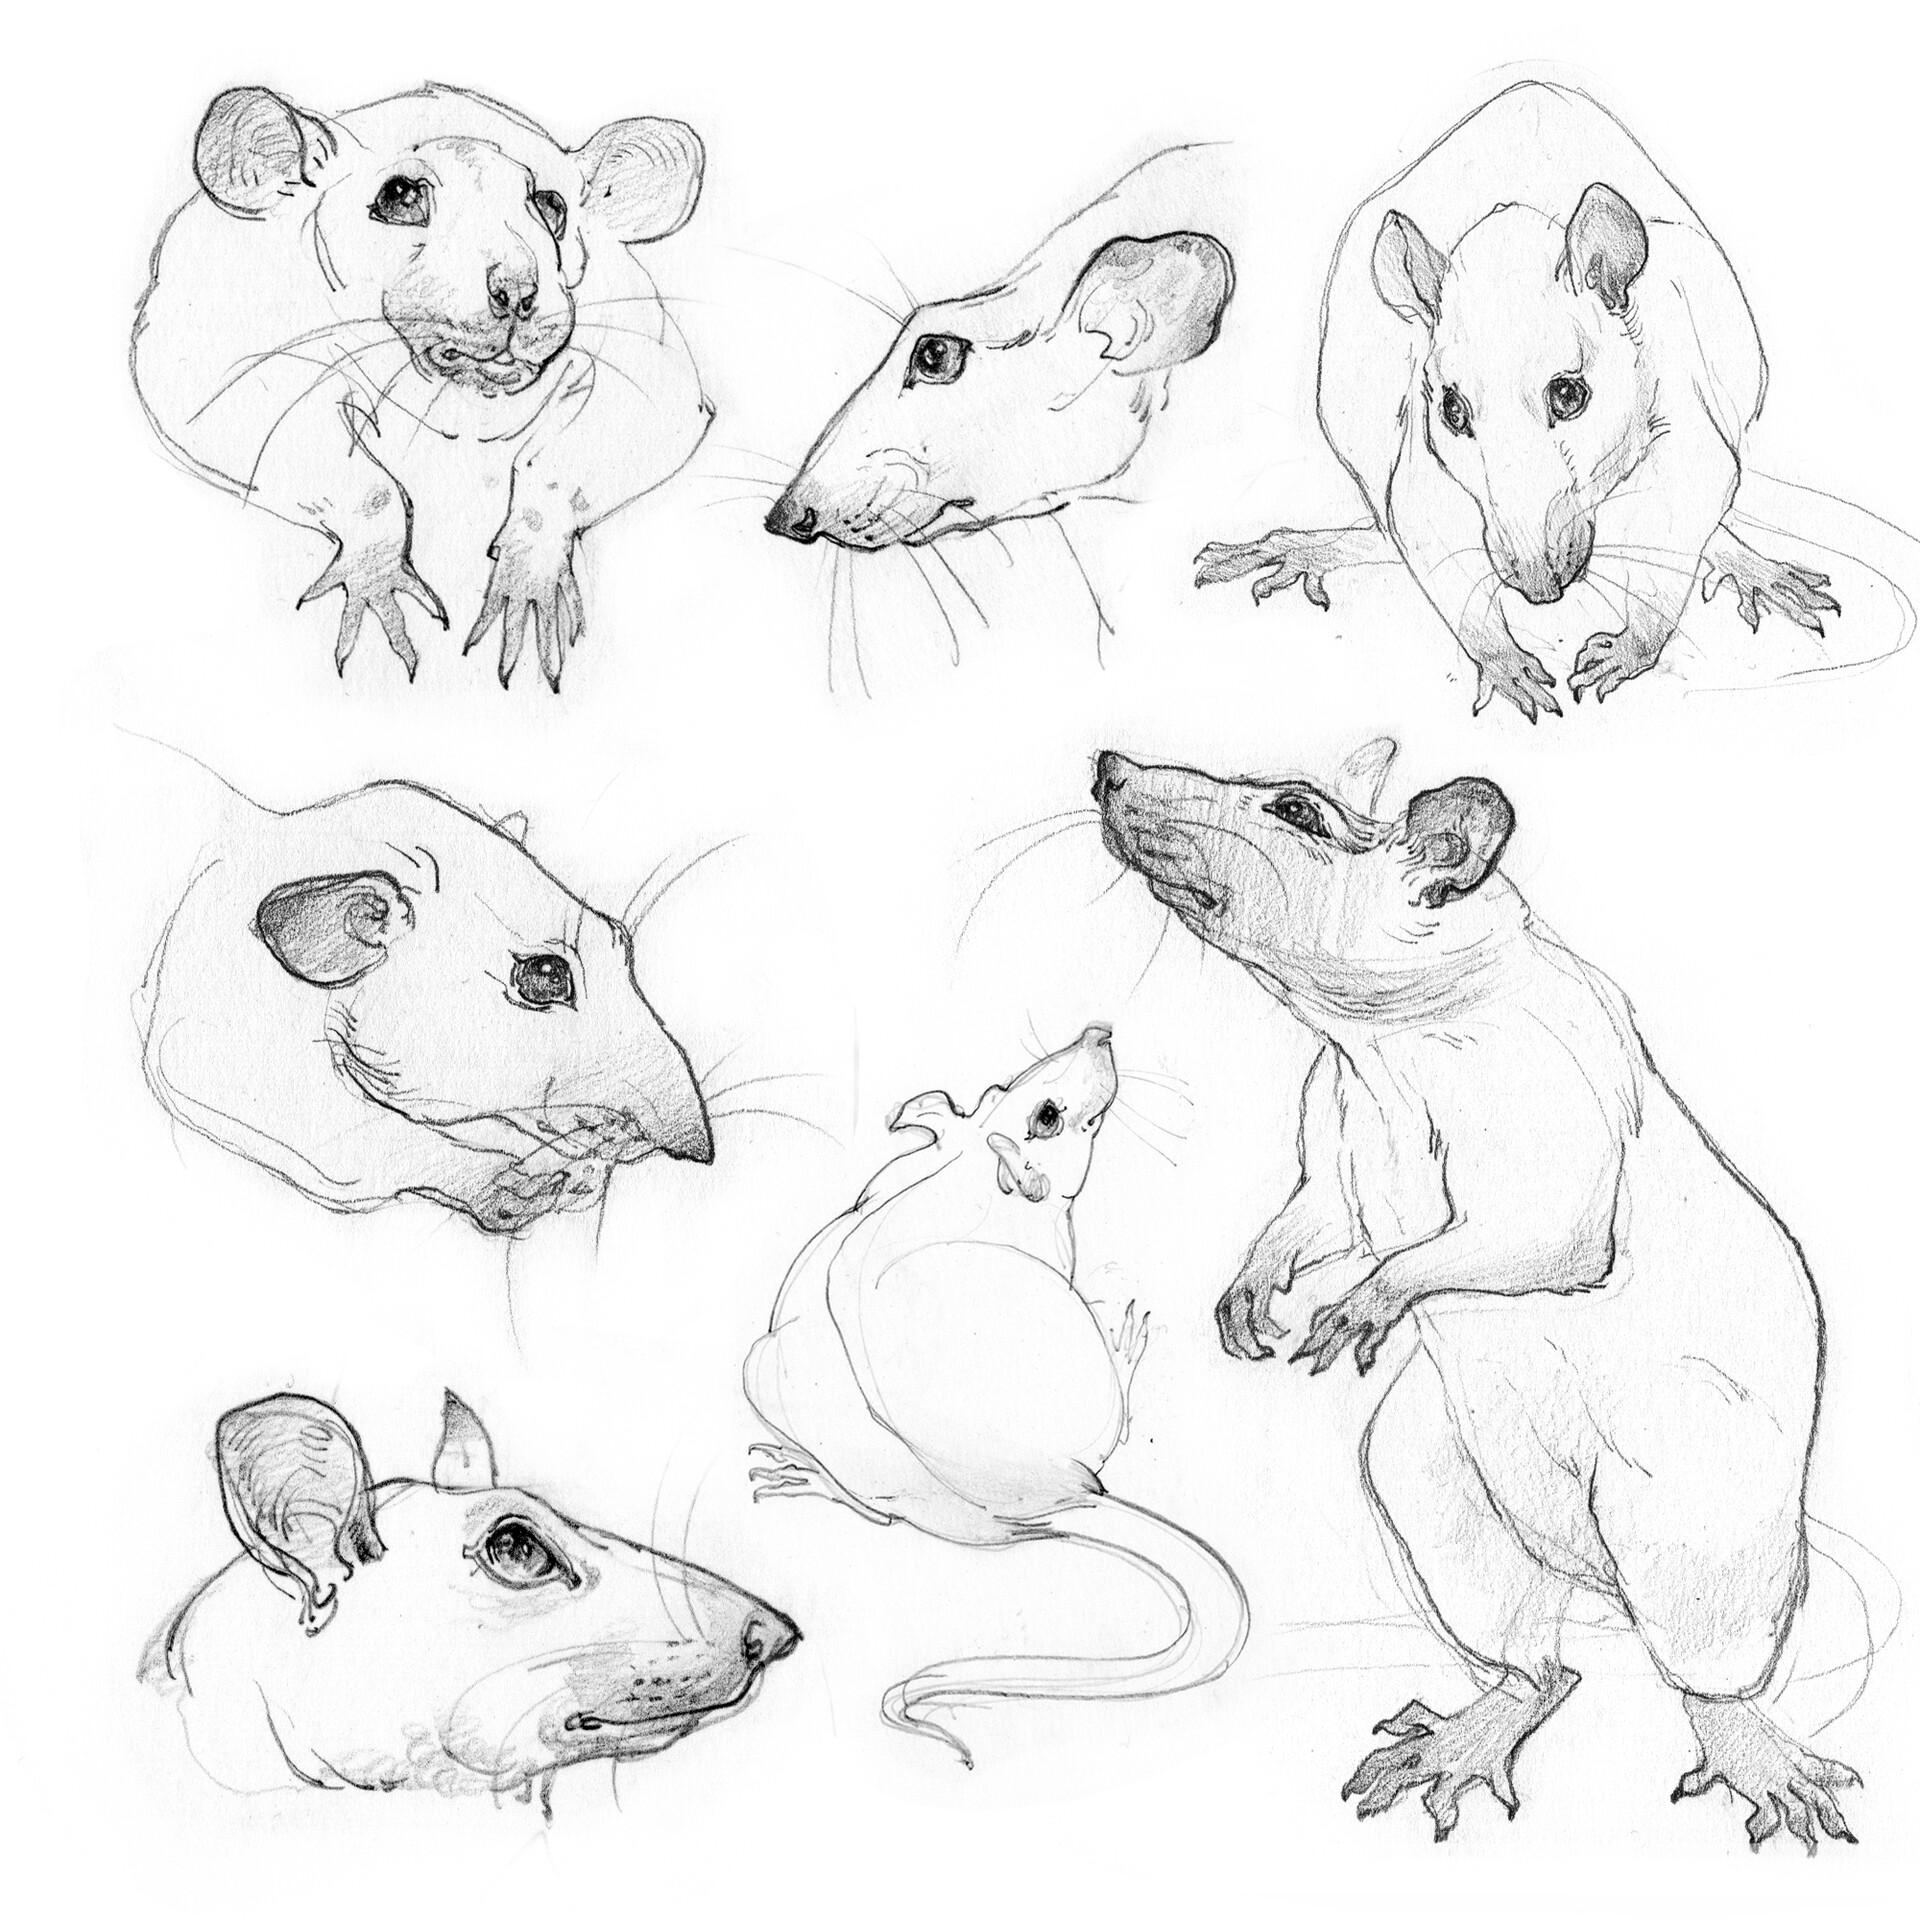 Kangaroo Rat Pencil Drawing - How to Sketch Kangaroo Rat using Pencils :  DrawingTutorials101.com